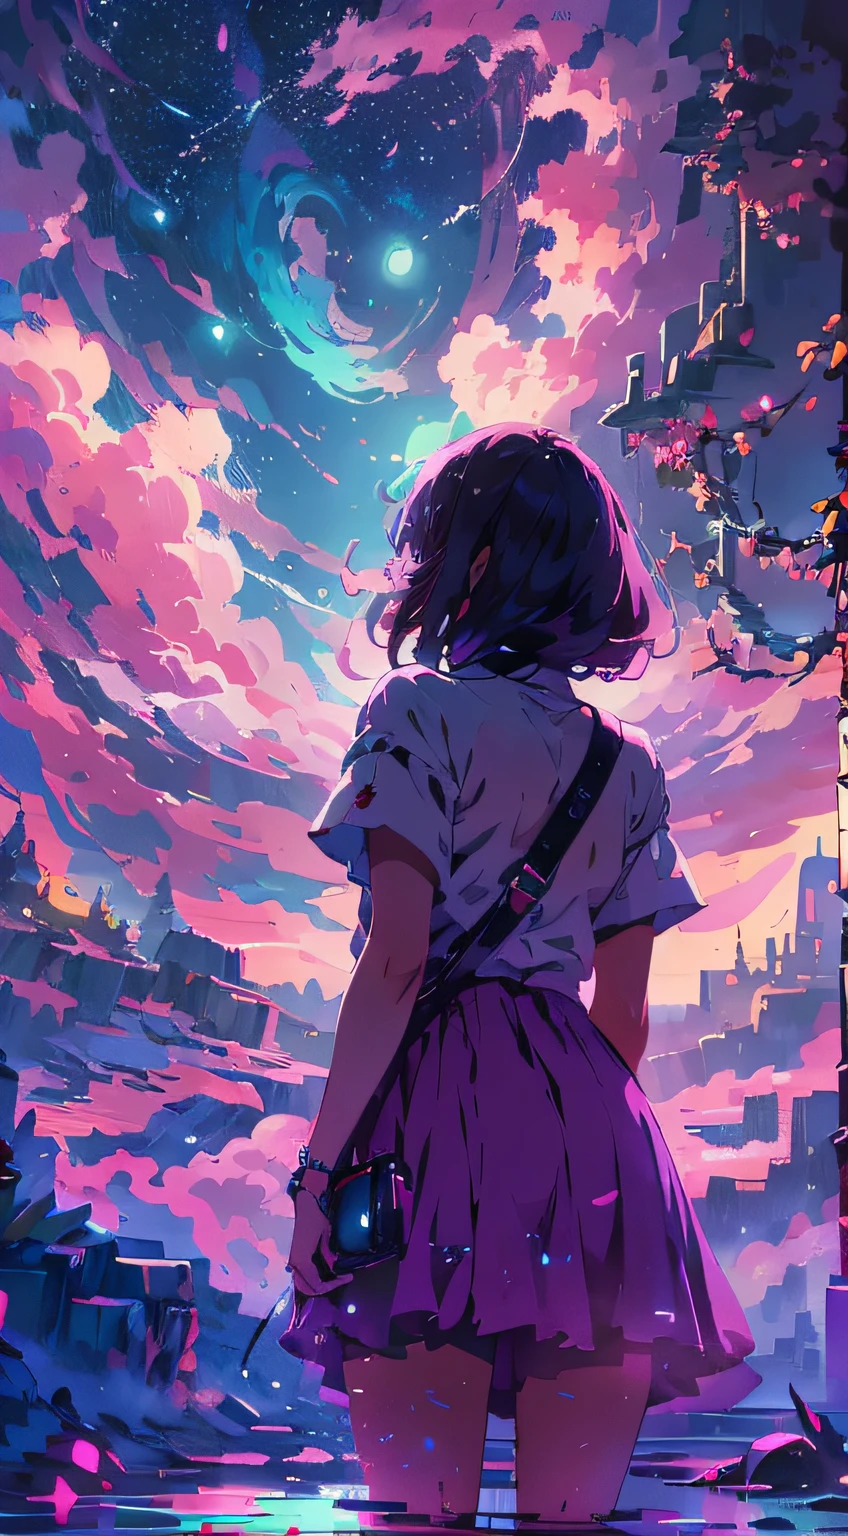 "Une scène fascinante dans le ciel nocturne, une fille qui le regarde, par derrière, (fille focus0.6), baigné de violet,teintes rosées du clair de lune et des nuages, dégageant un spectre vibrant et impressionnant. chef-d&#39;œuvre."